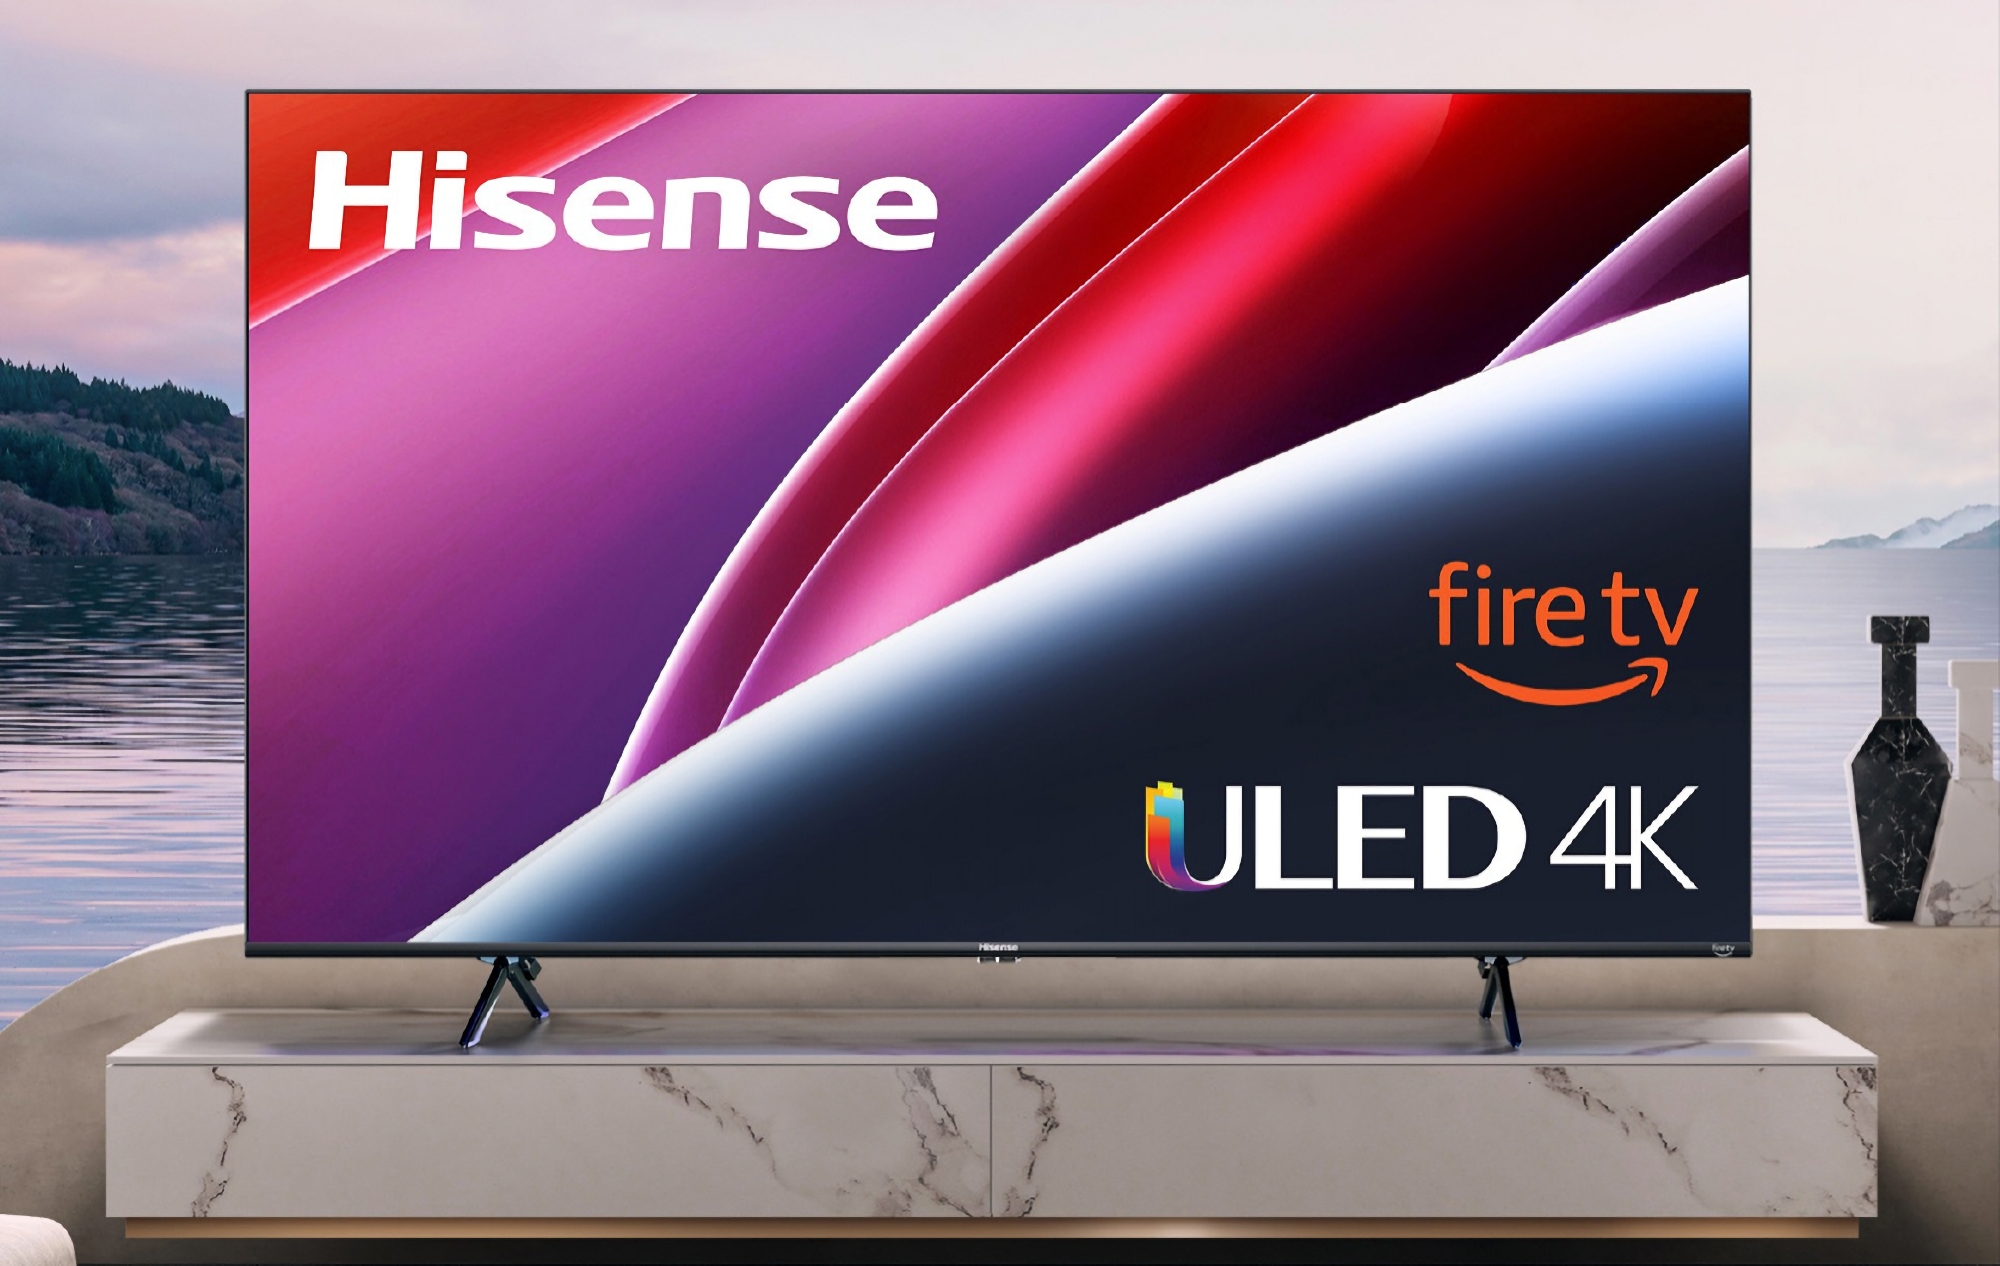 58-дюймовий смарт-телевізор Hisense ULED U6 з Fire TV на борту можна купити на Amazon зі знижкою $150